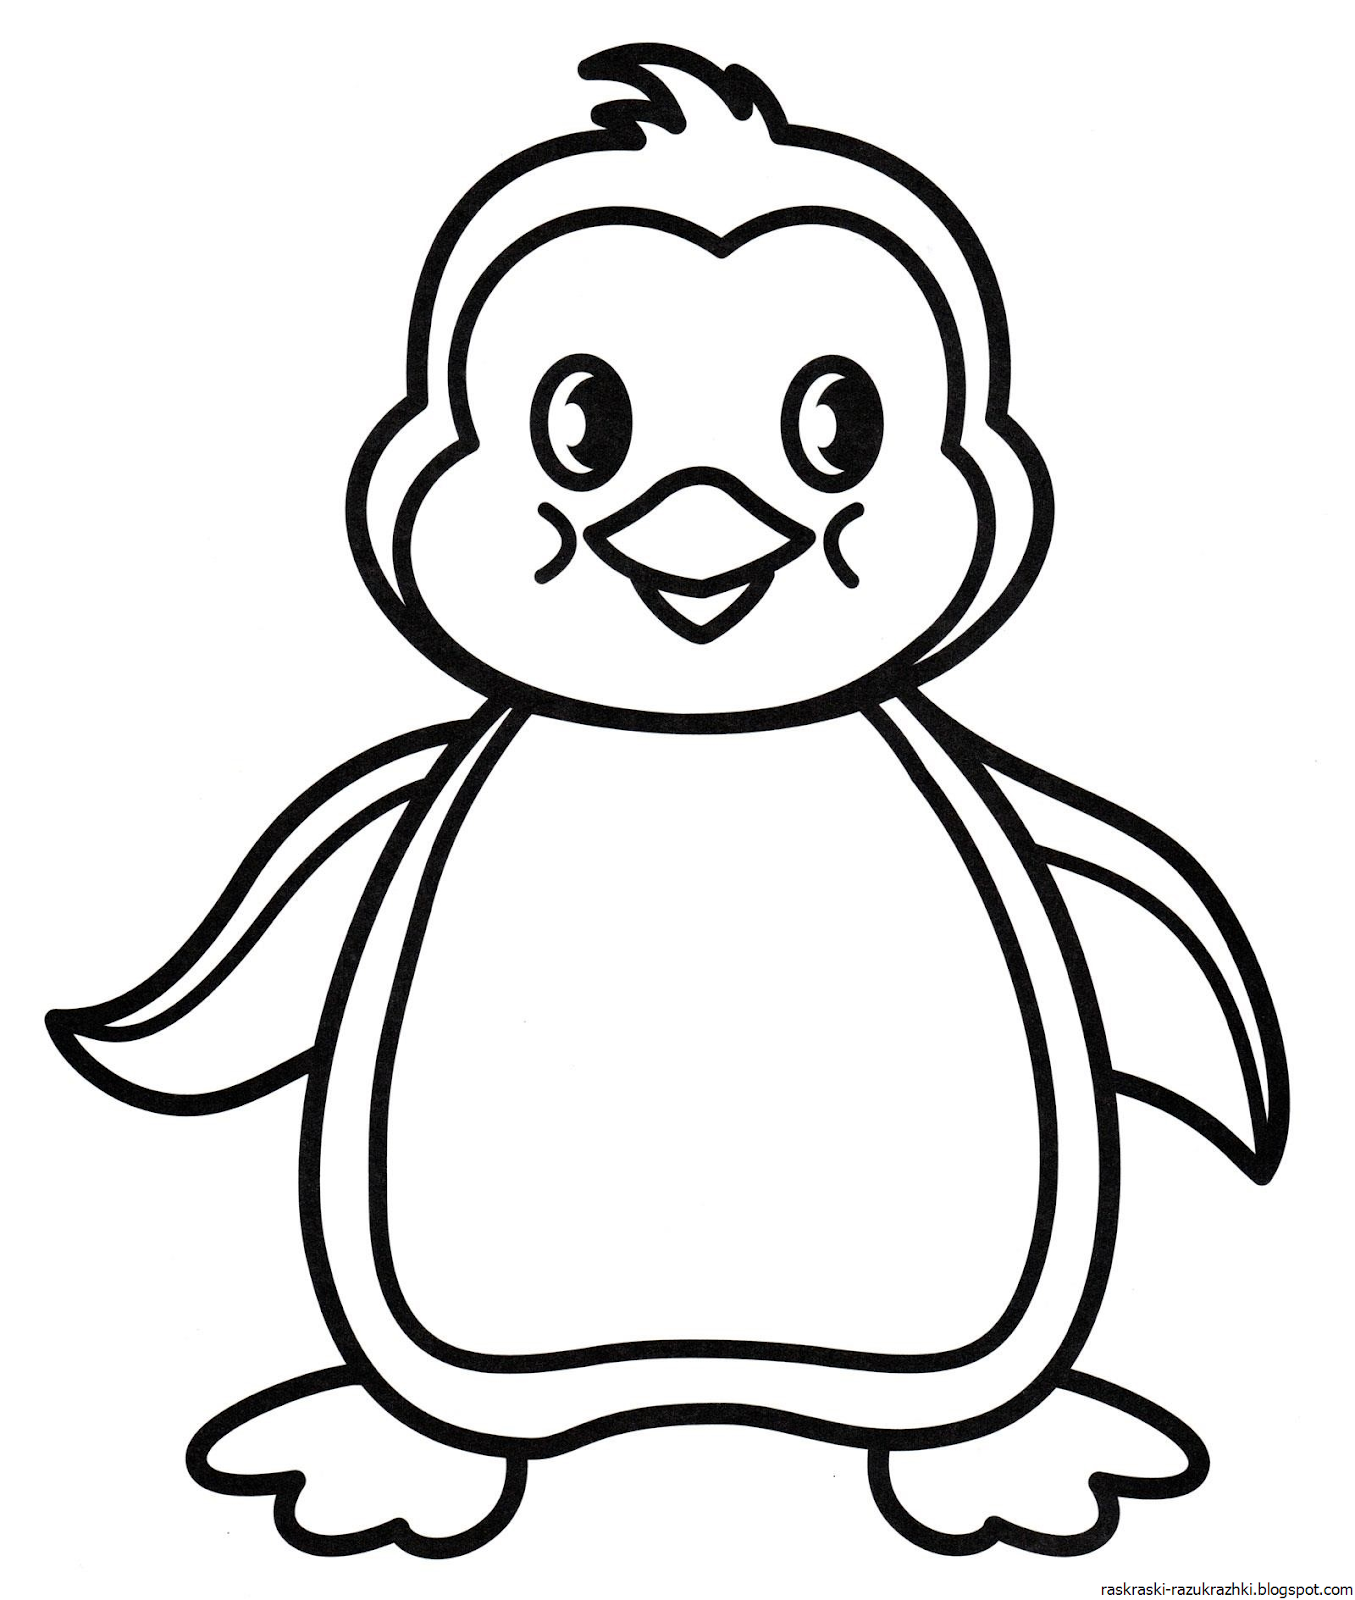 Картинки для раскрашивания для детей 2. Раскраска Пингвиненок Лоло. Пингвин Лоло раскраска для детей. Раскраскаидля малышей. Шаблон раскраски для малышей.